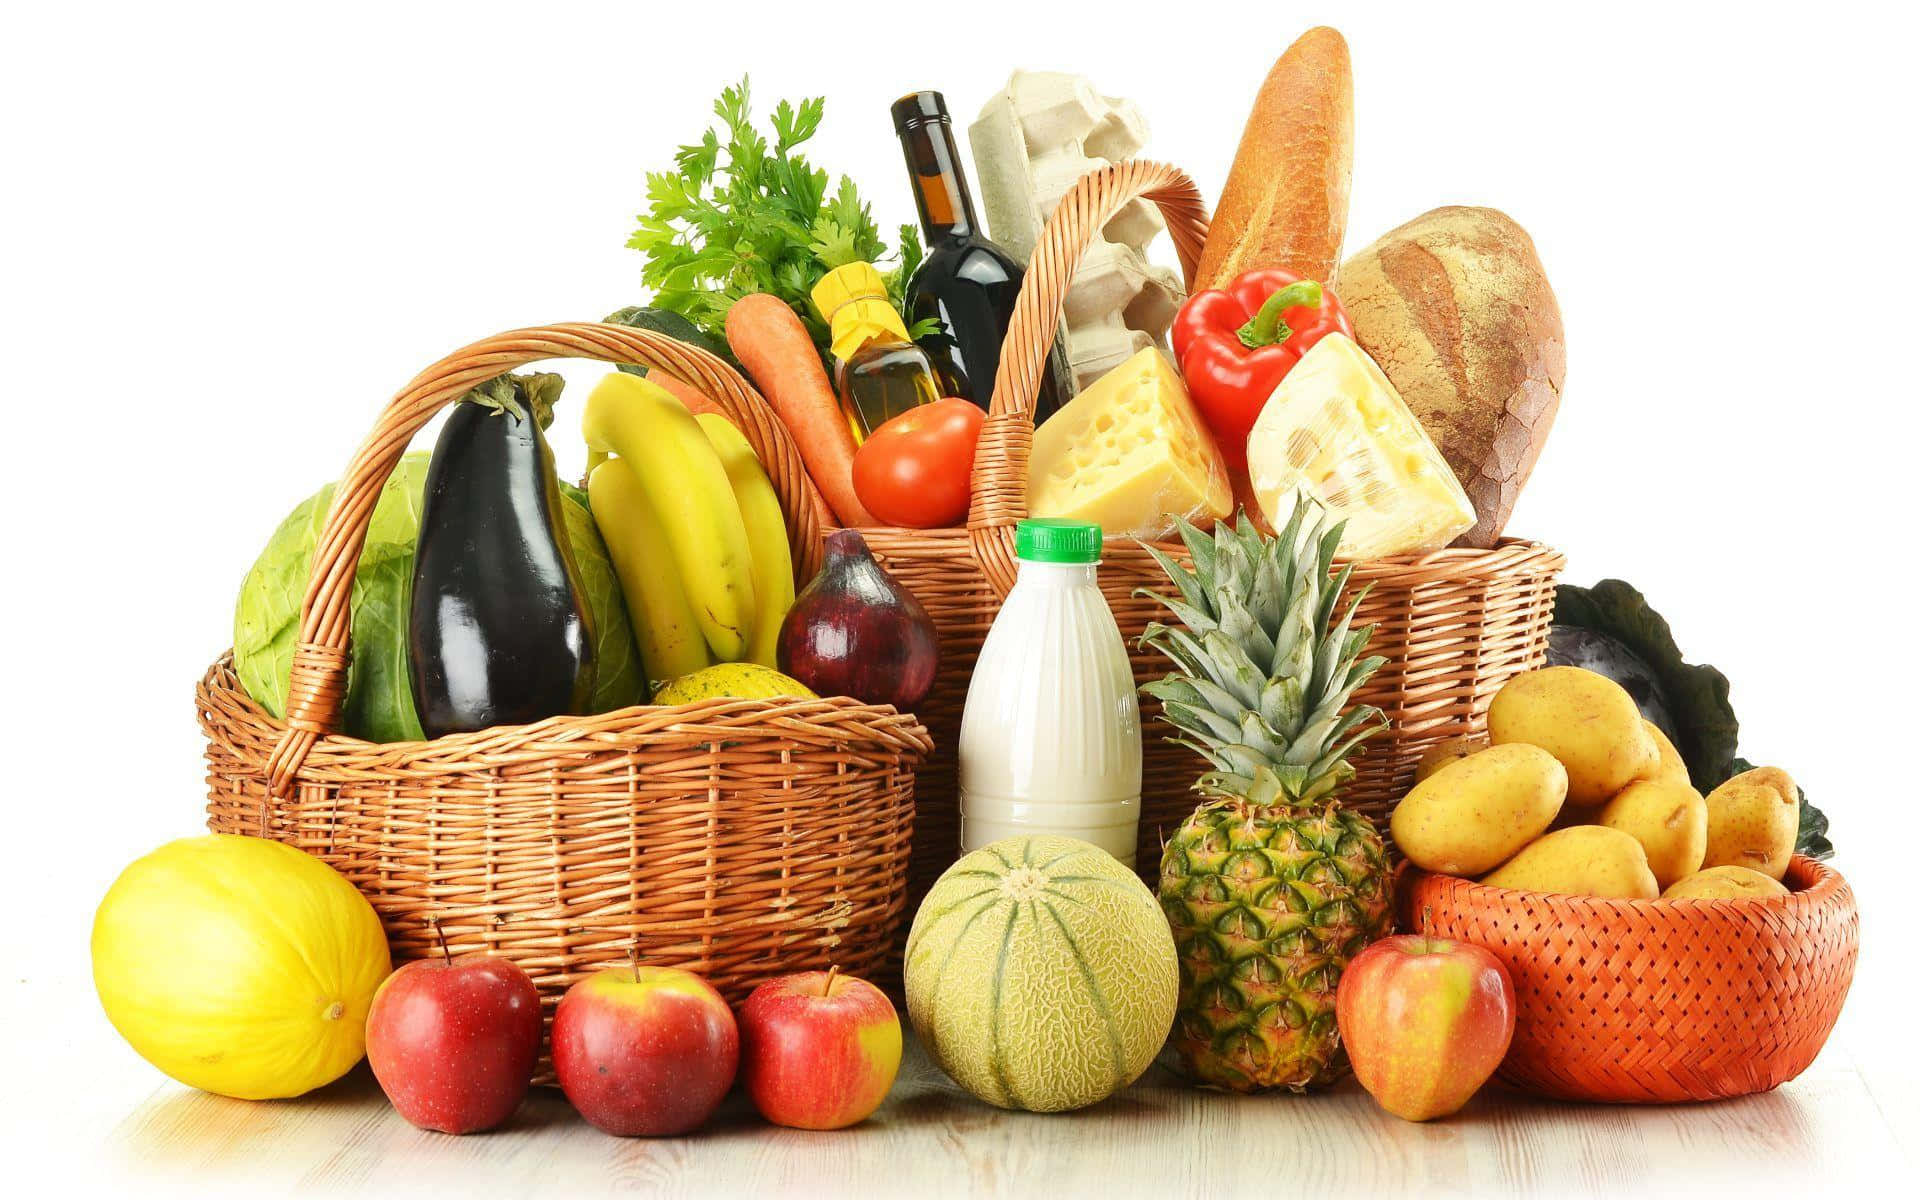 Imagende Ingredientes Saludables Para Comprar En El Supermercado De Alimentos.